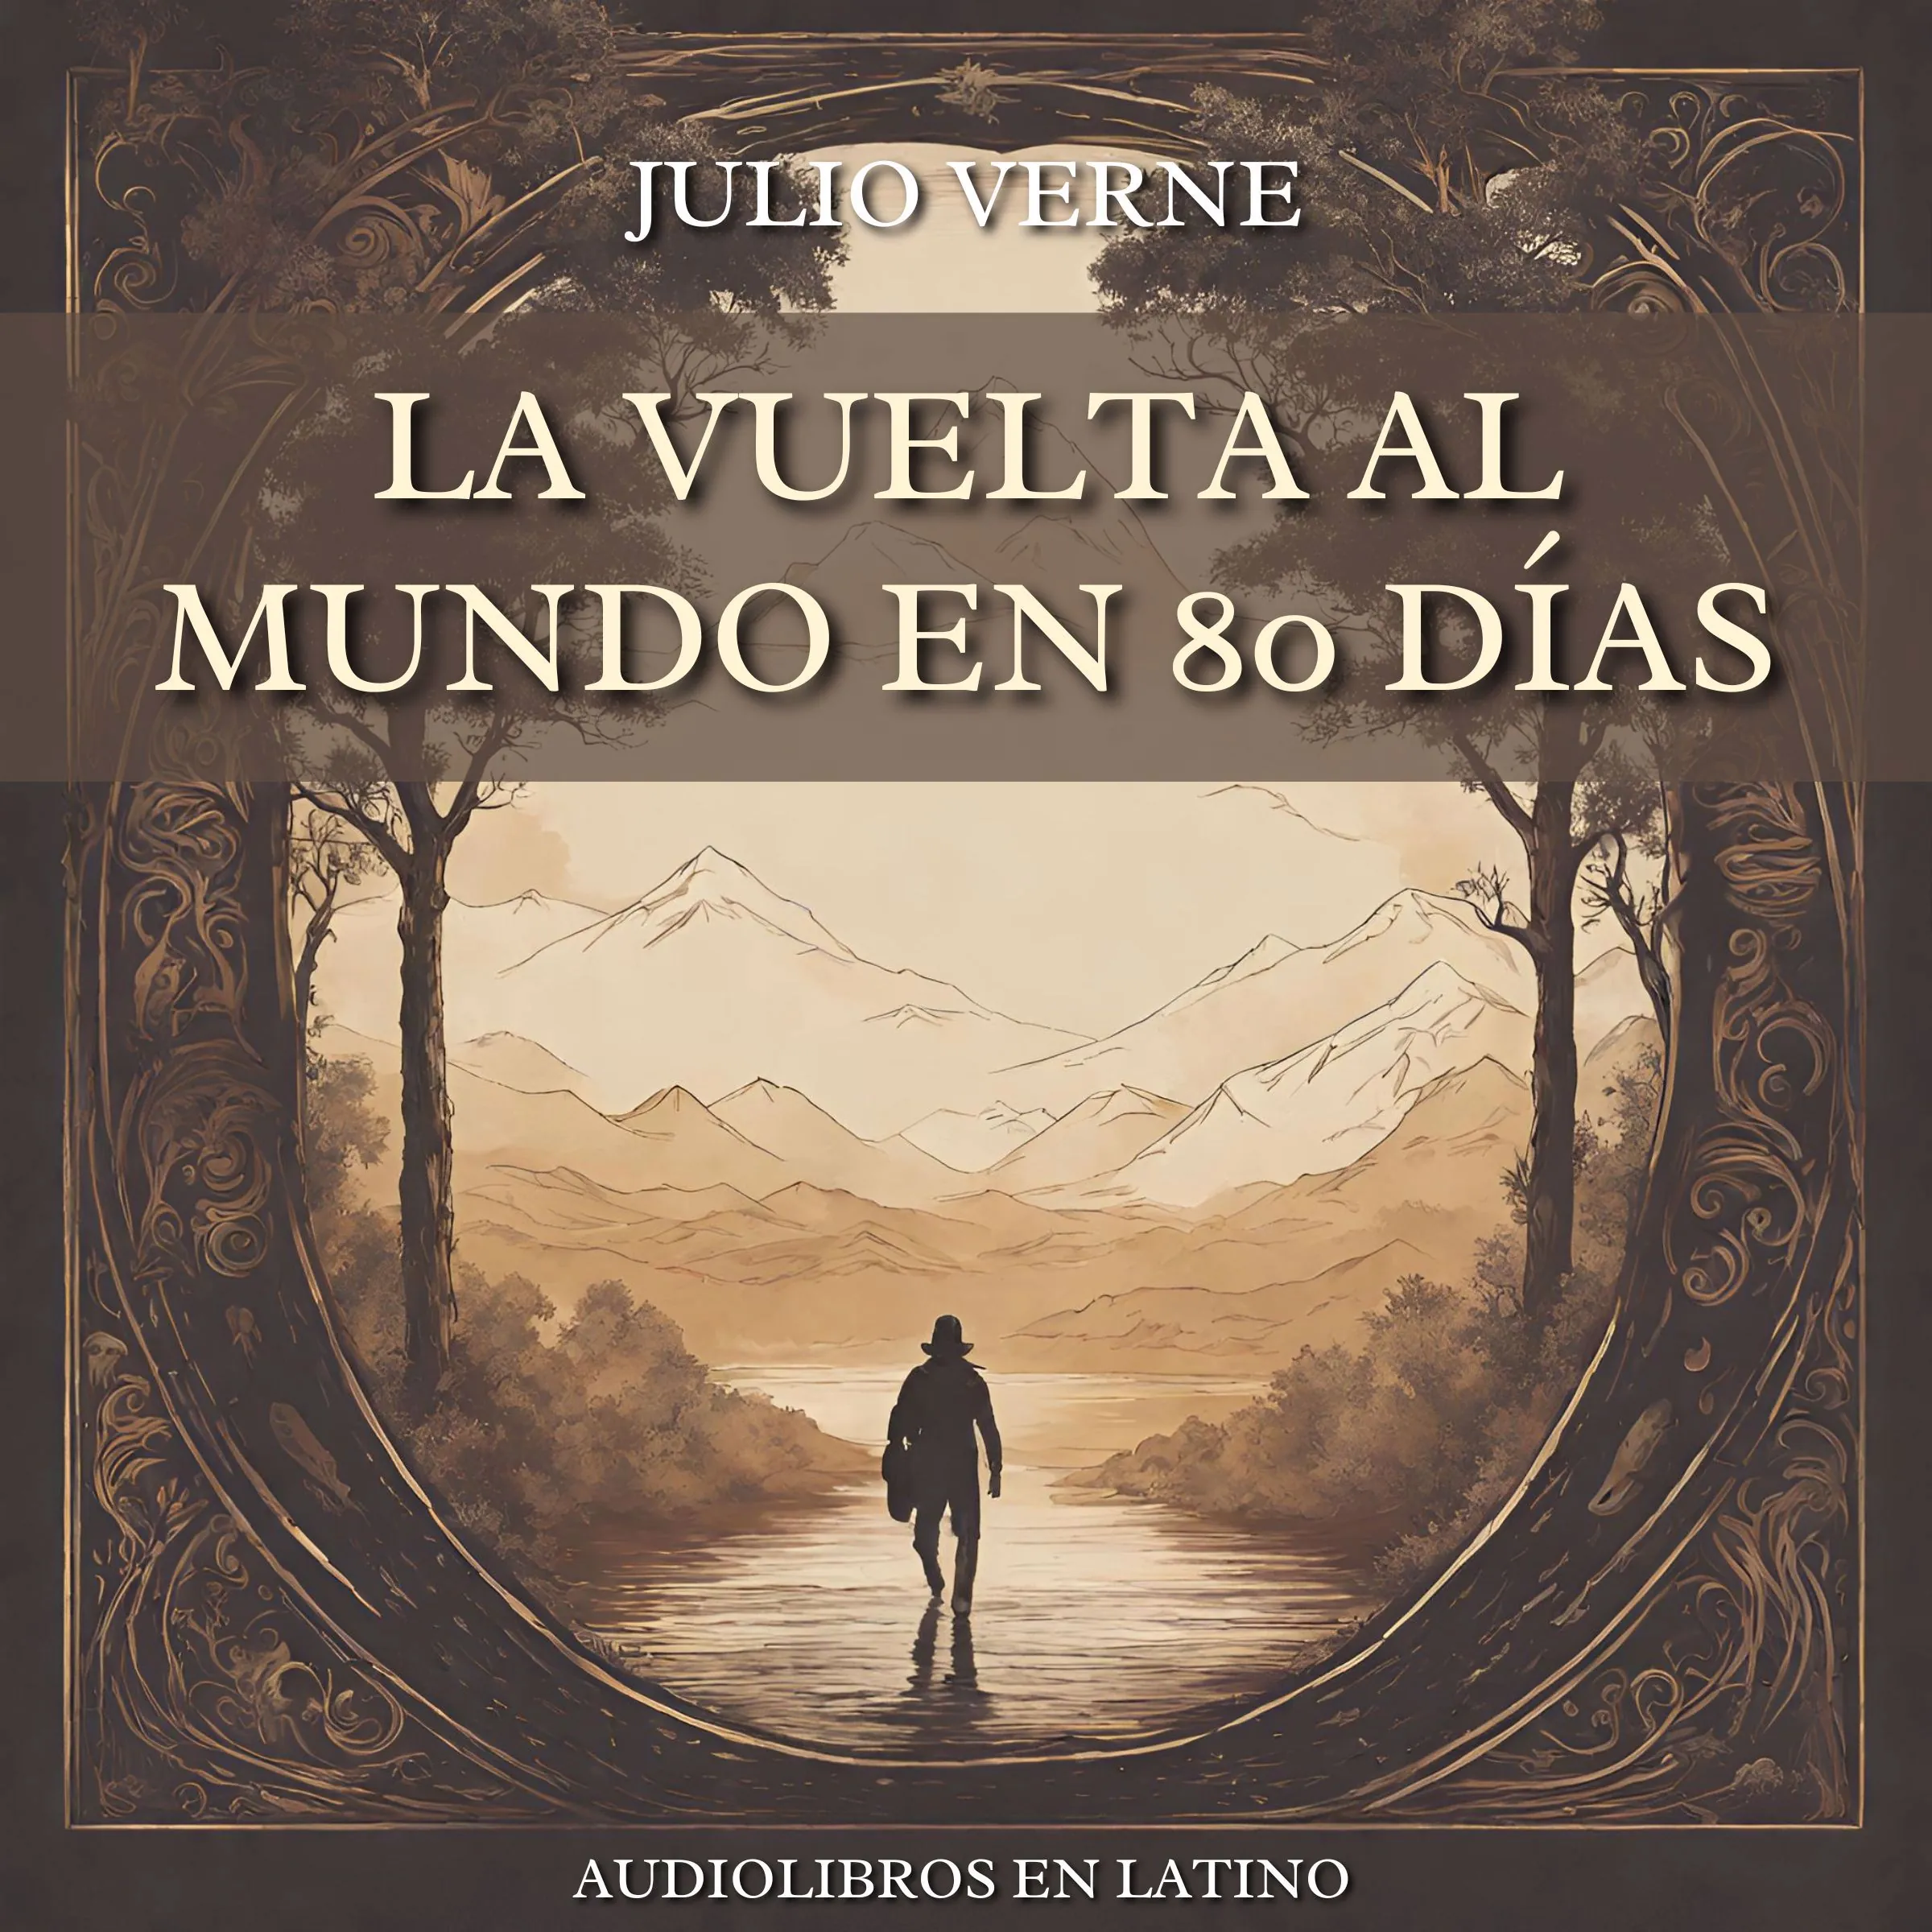 La Vuelta al Mundo en 80 Días Audiobook by Julio Verne